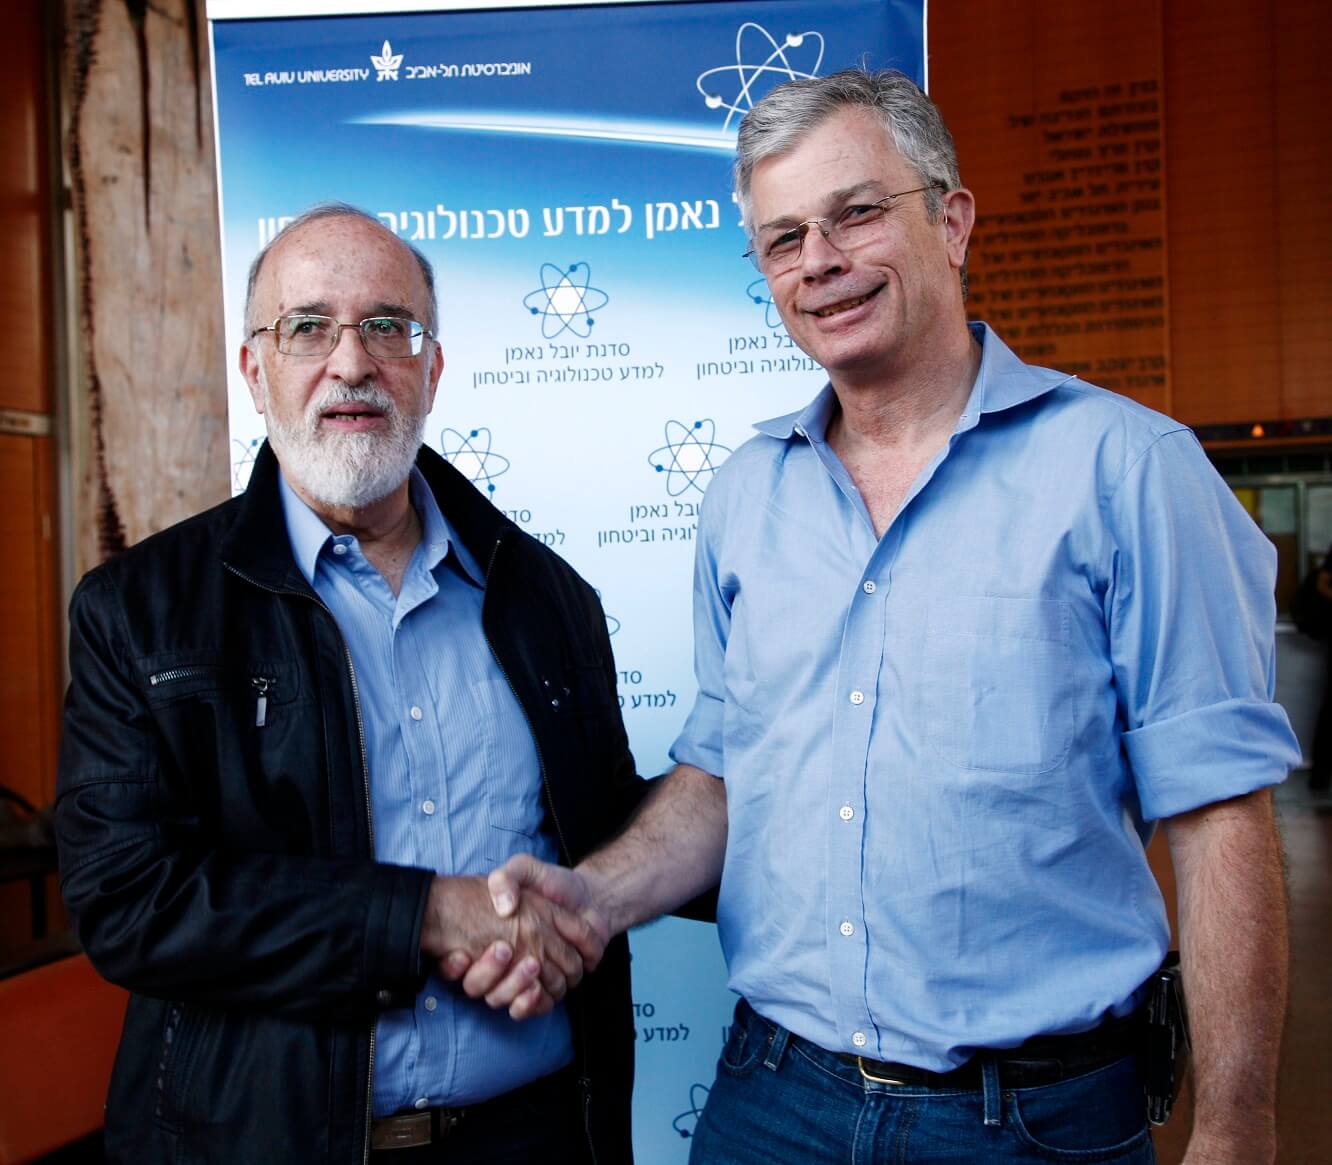 מימין: דדי פרלמוטר, סגן נשיא בכיר של חברת אינטל העולמית, ופרופ' יצחק בן ישראל